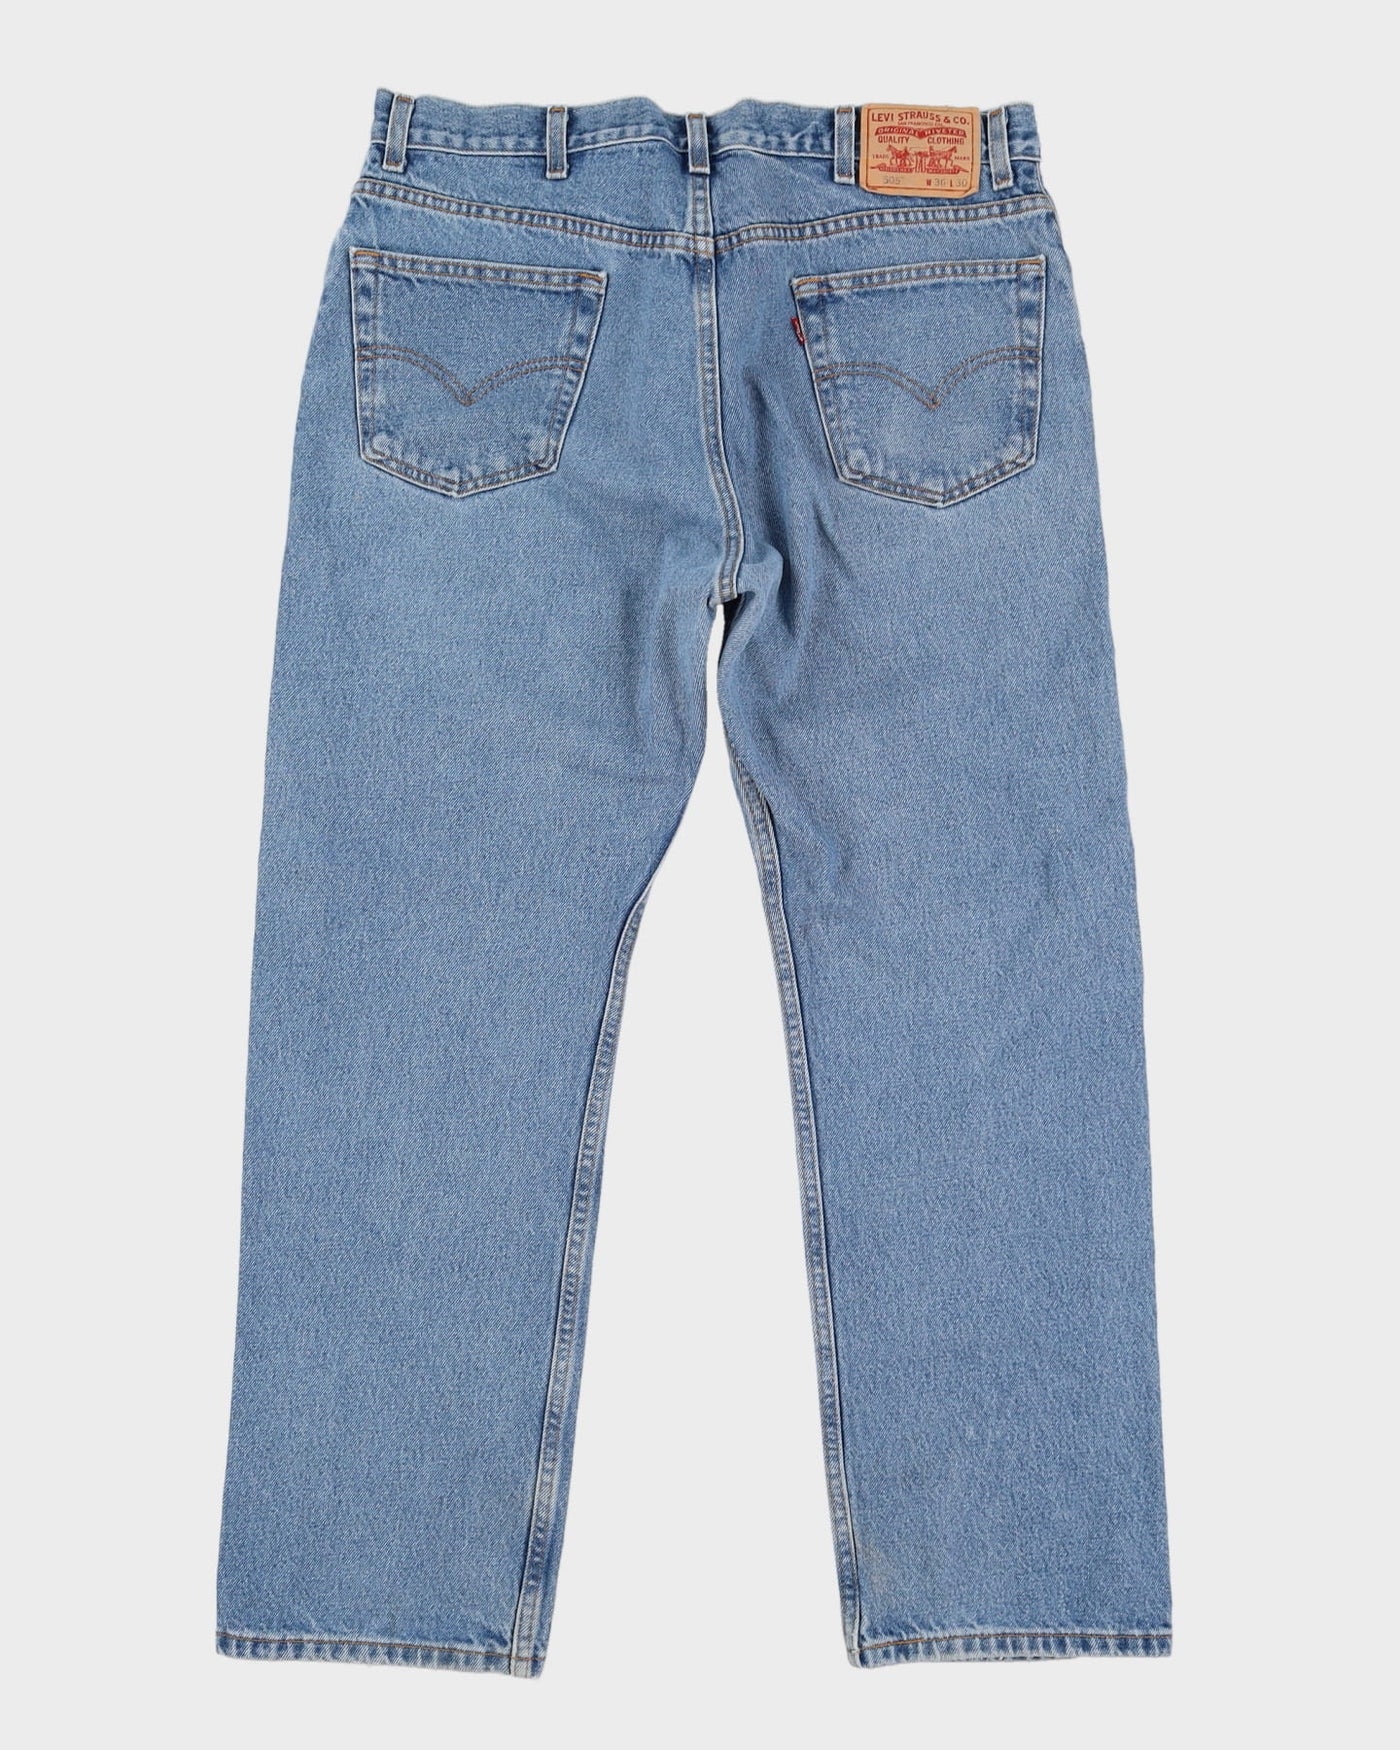 Levi's 505 Blue Jeans - W36 L30